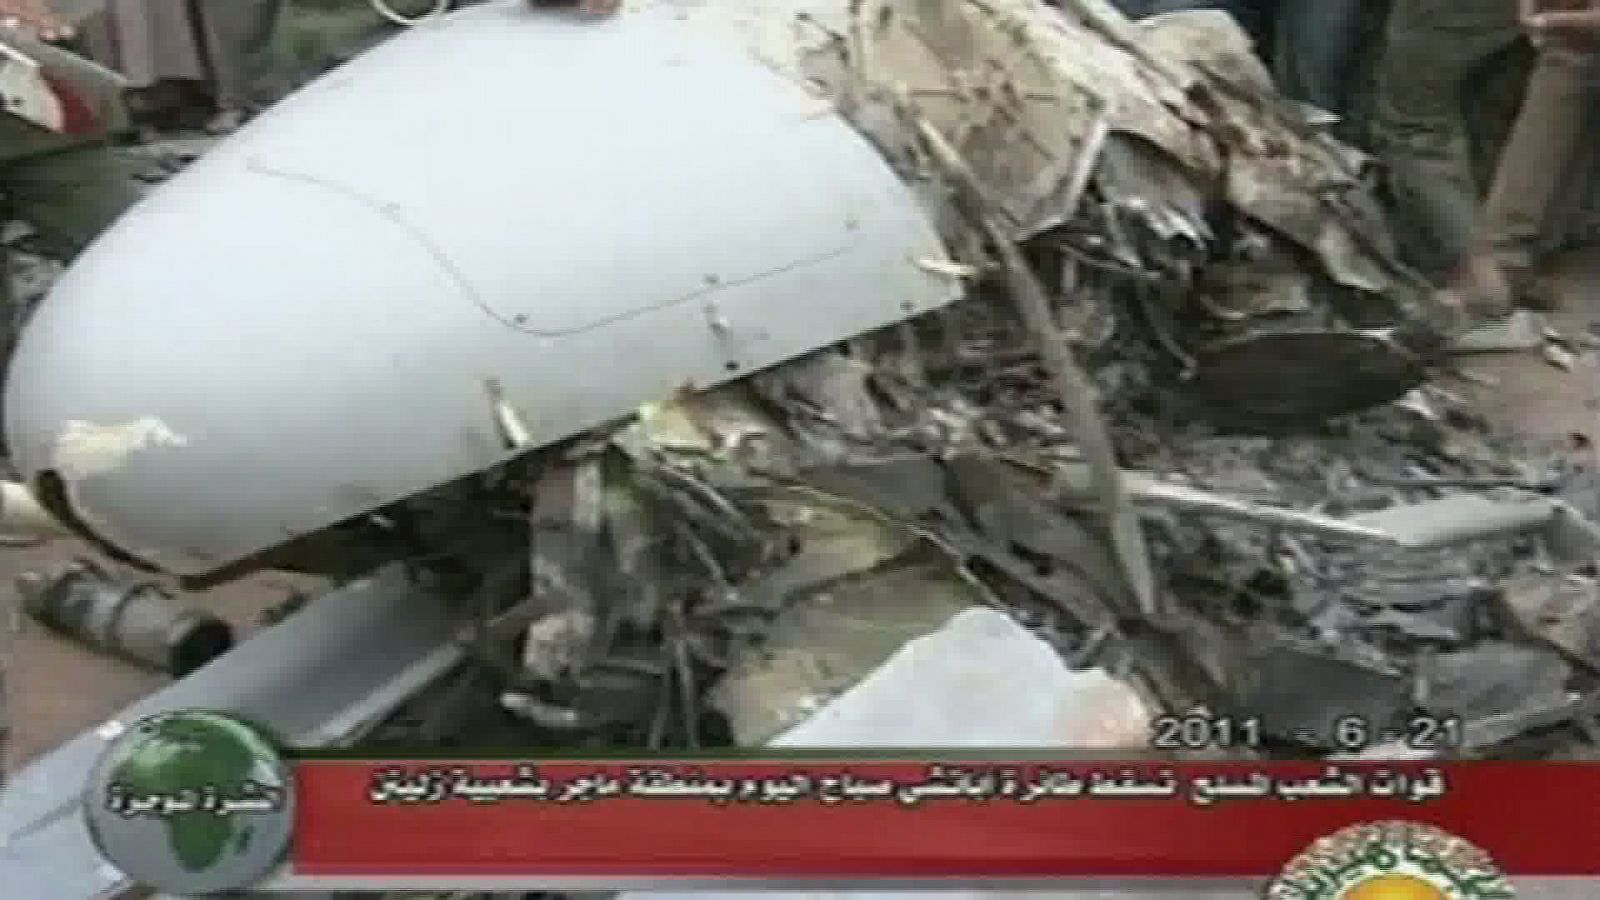 Imagen del helicóptero siniestrado difundida por la televisión libia.